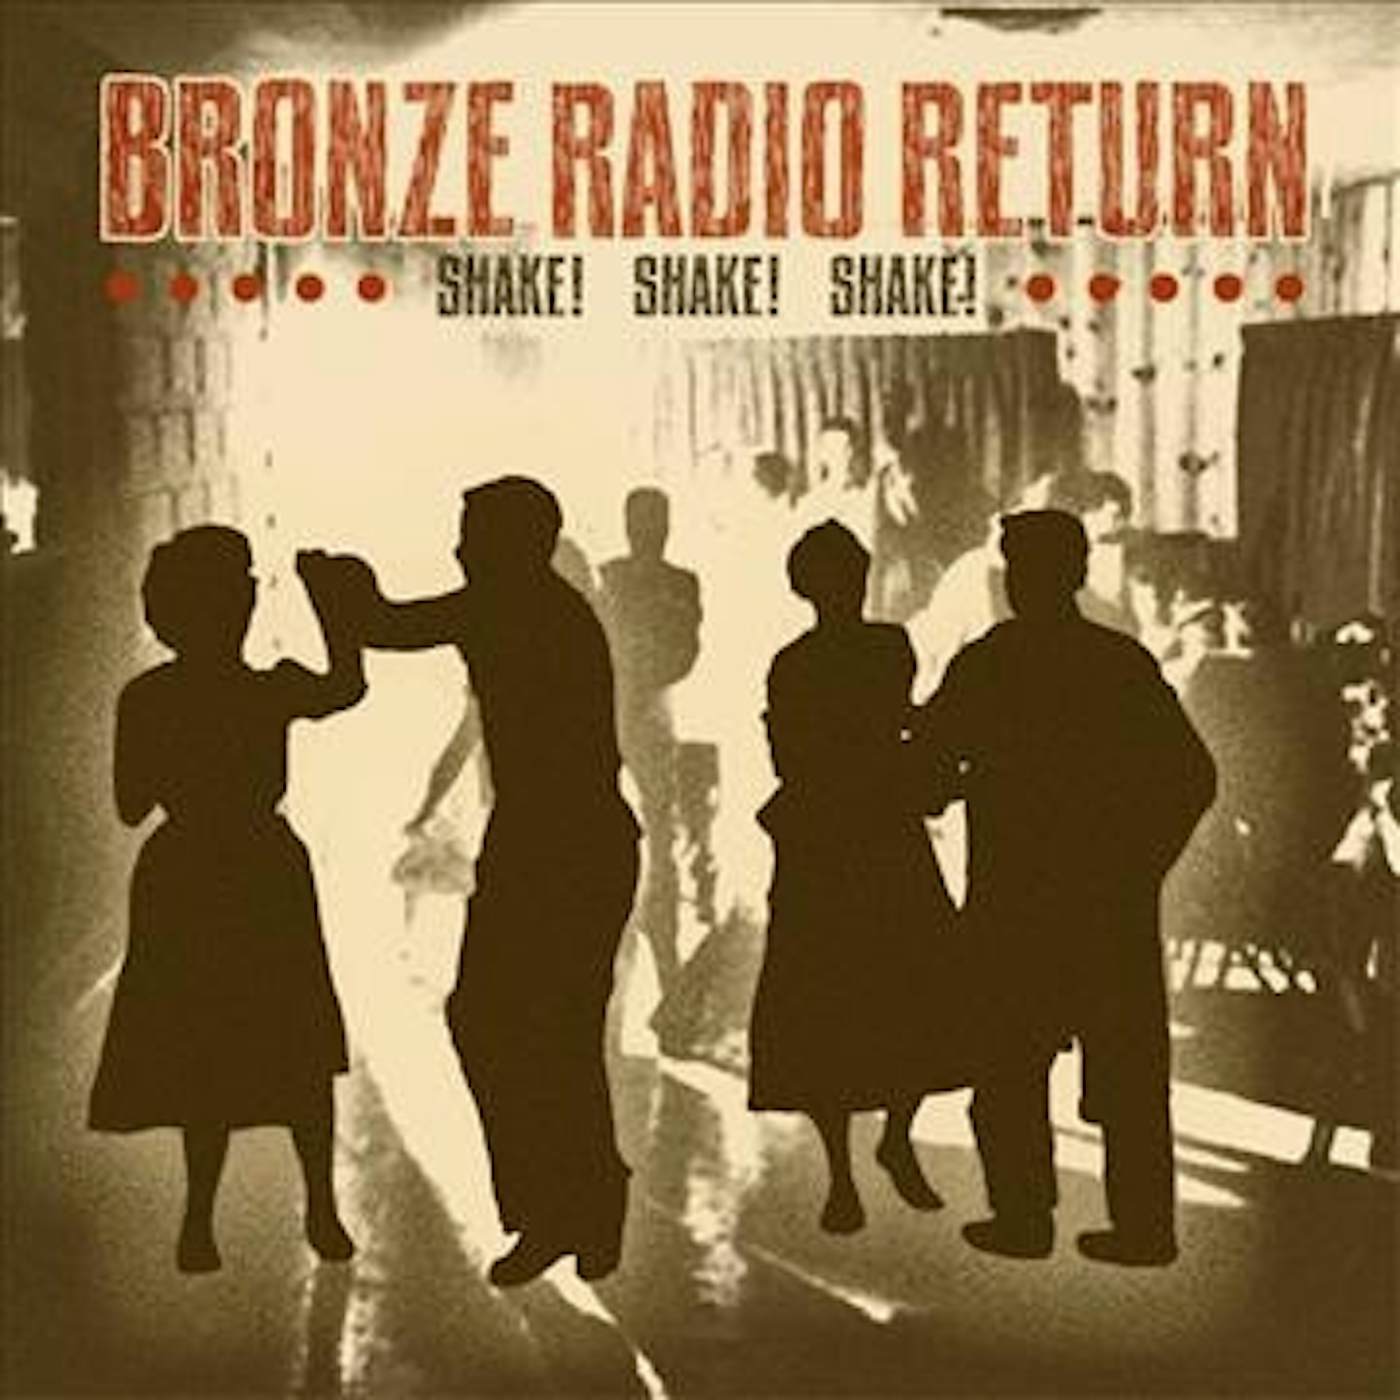 Bronze Radio Return Shake, Shake, Shake Vinyl Record